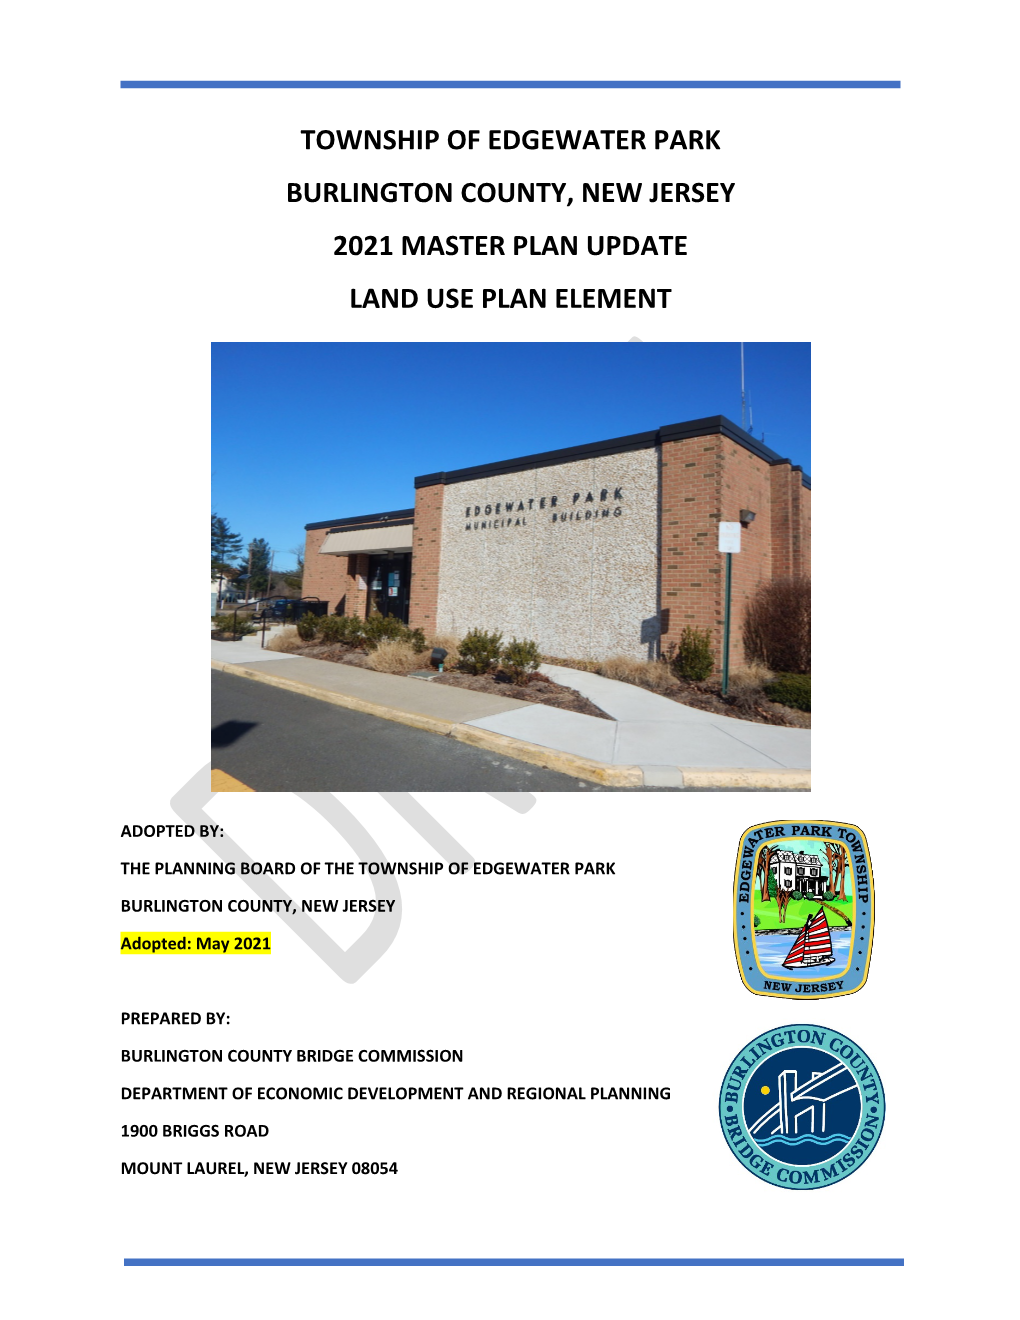 Land Use Plan Element